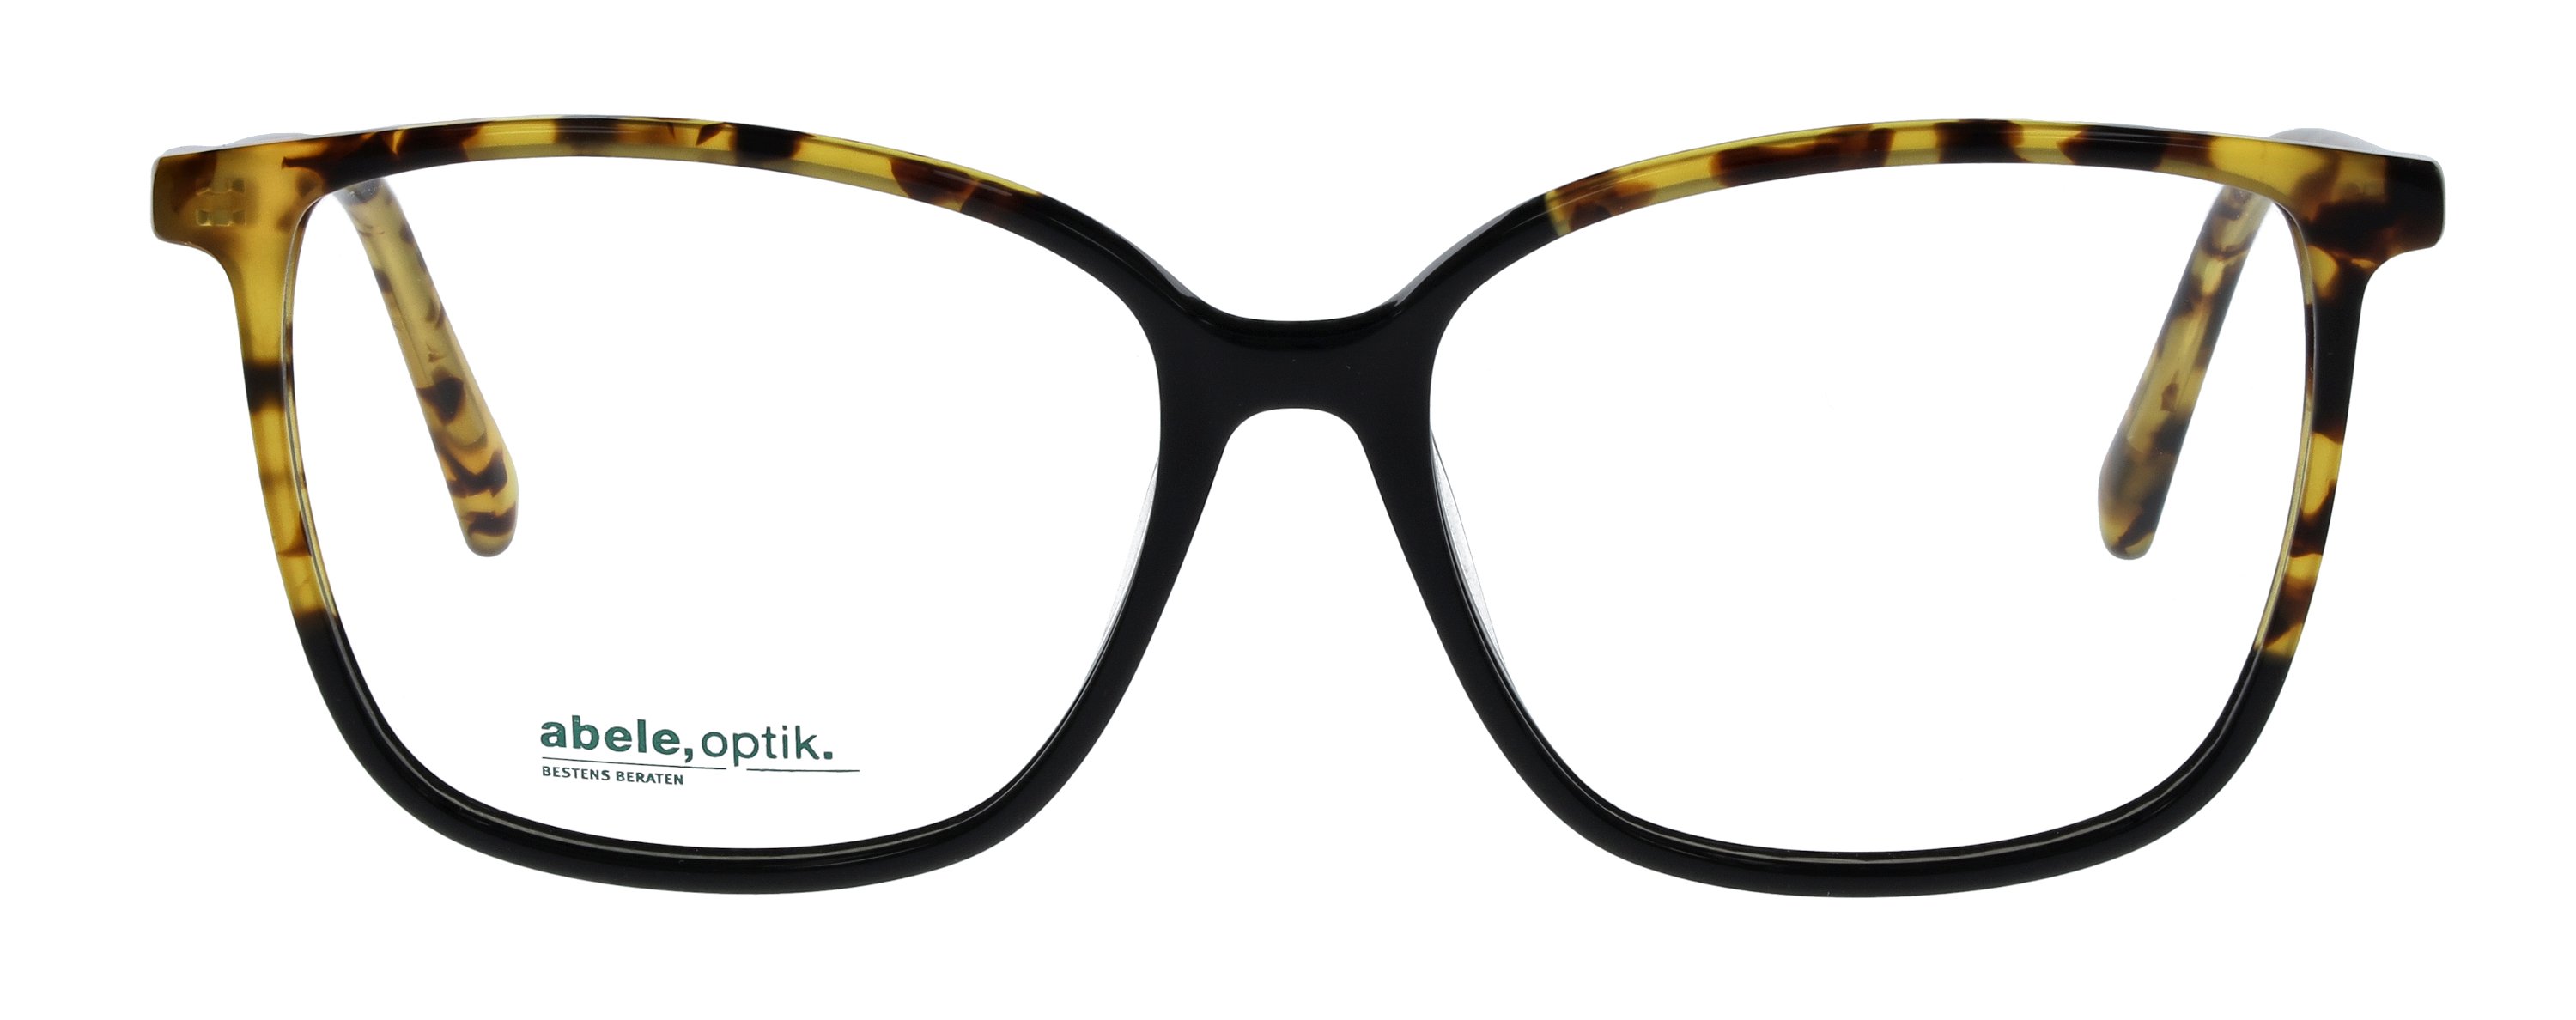 Das Bild zeigt die Korrektionsbrille 148701 von der Marke Abele Optik in schwarz-gelb havanna.